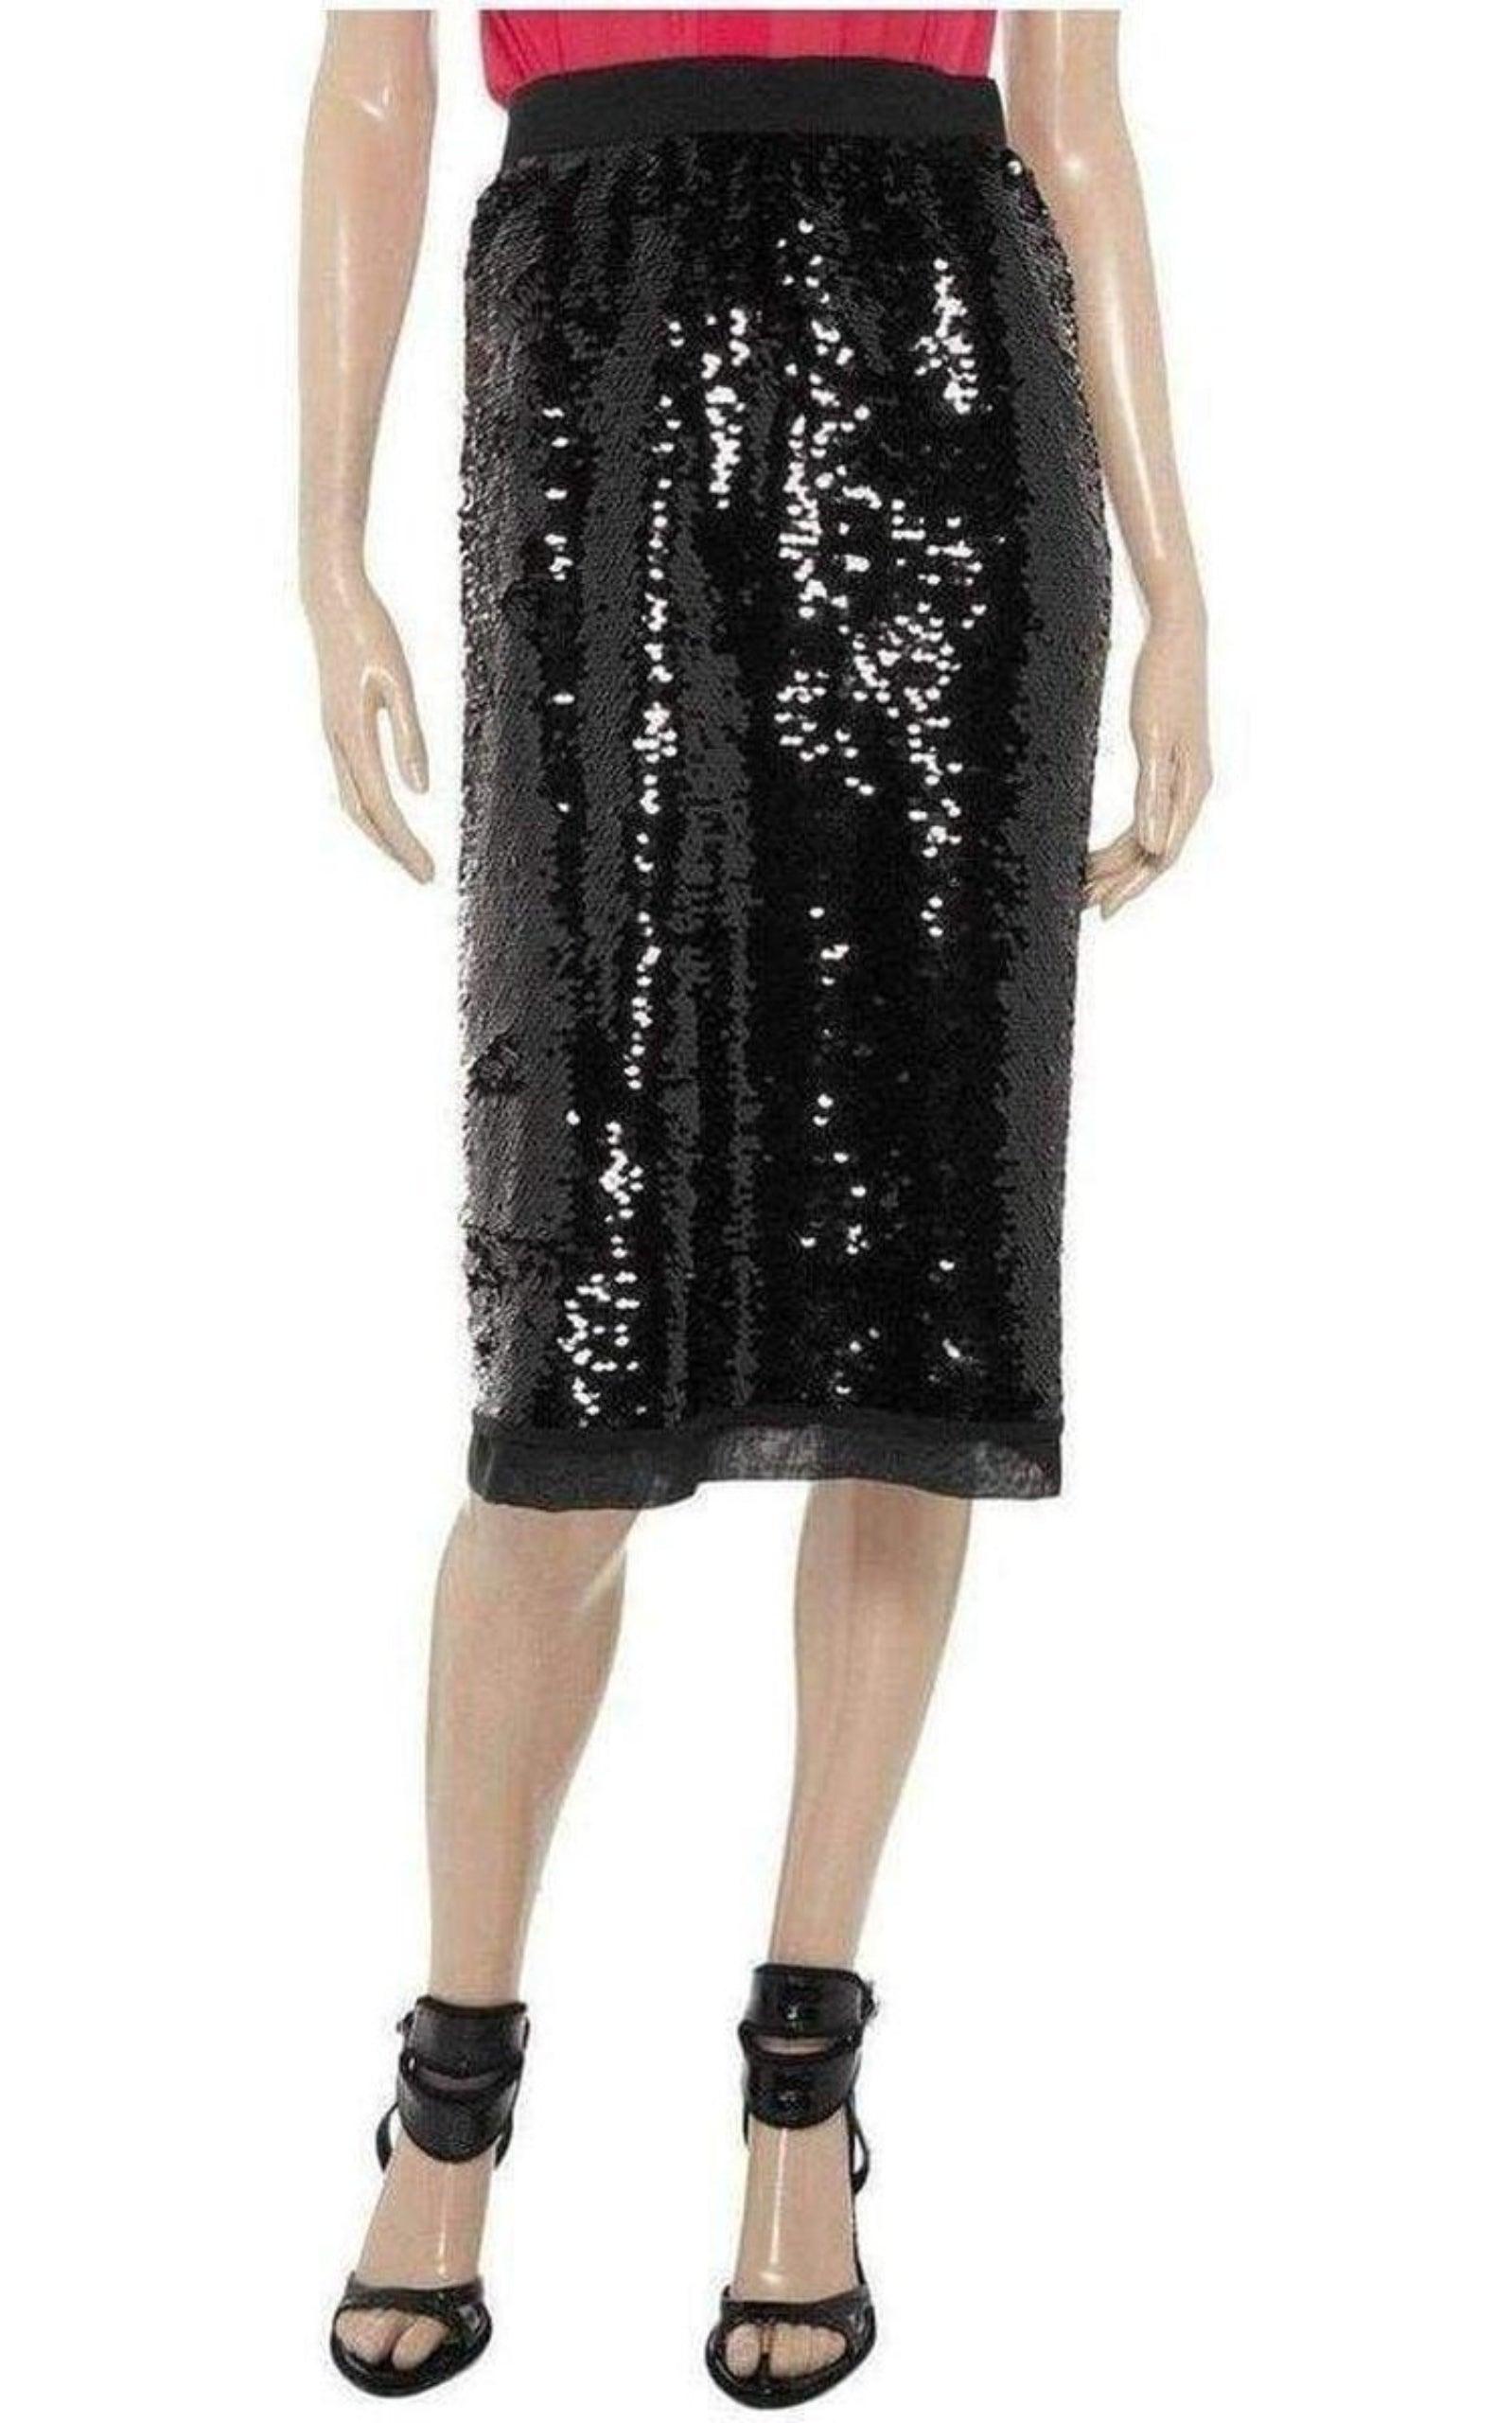  Dolce & GabbanaSequin-Embellished Pencil Skirt - Runway Catalog